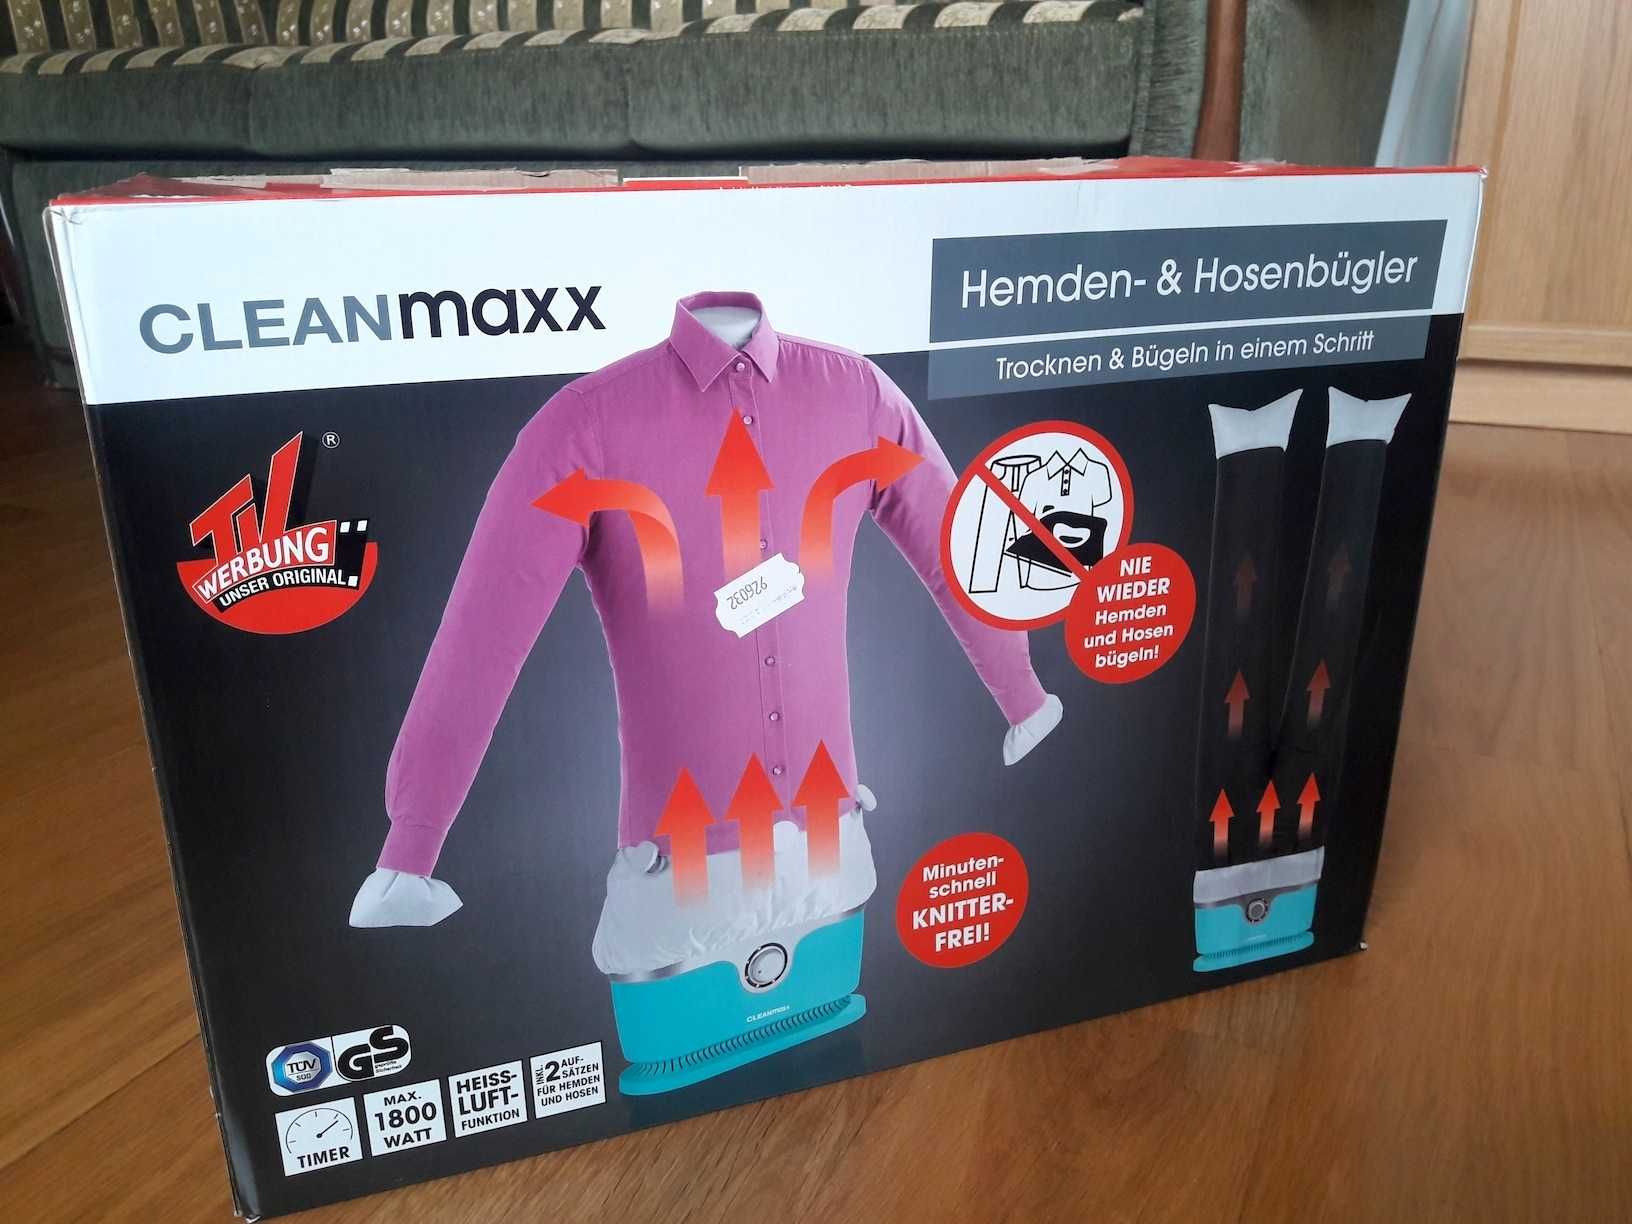 Urządzenie do suszenia ubrań CLEANmaxx 1800 W